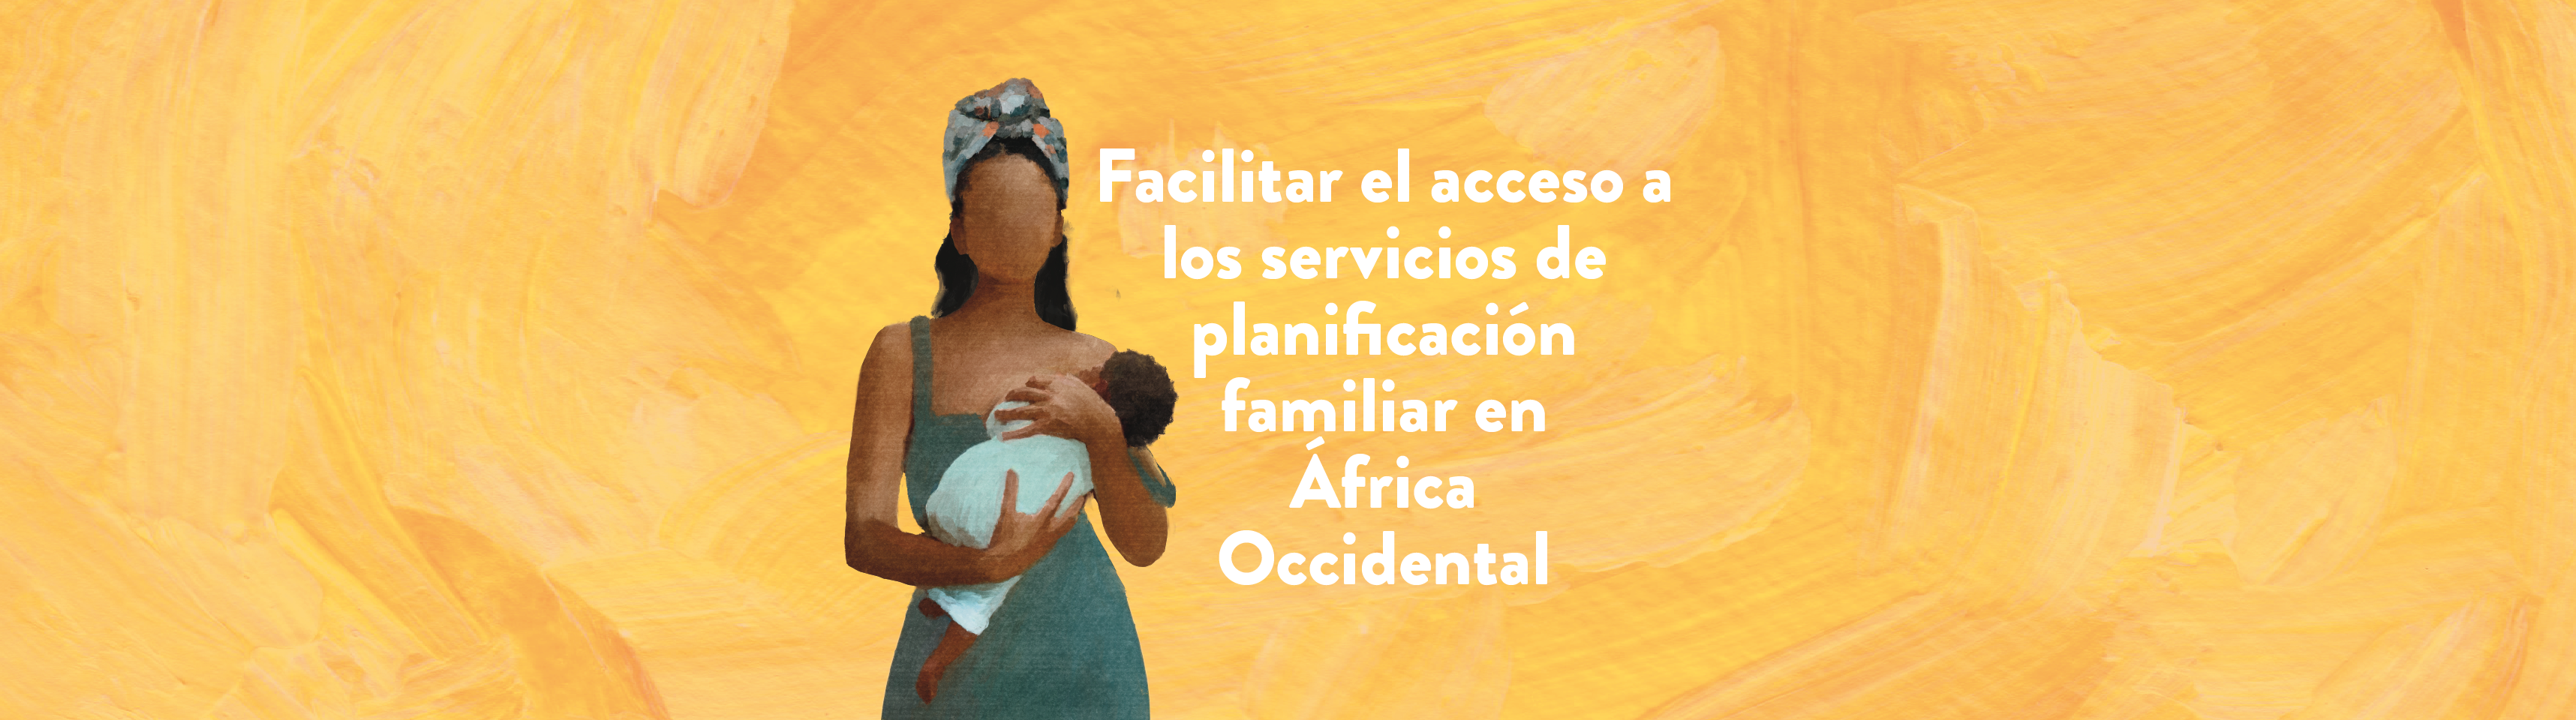 Facilitar el acceso a los servicios de planificación familiar en África Occidental 